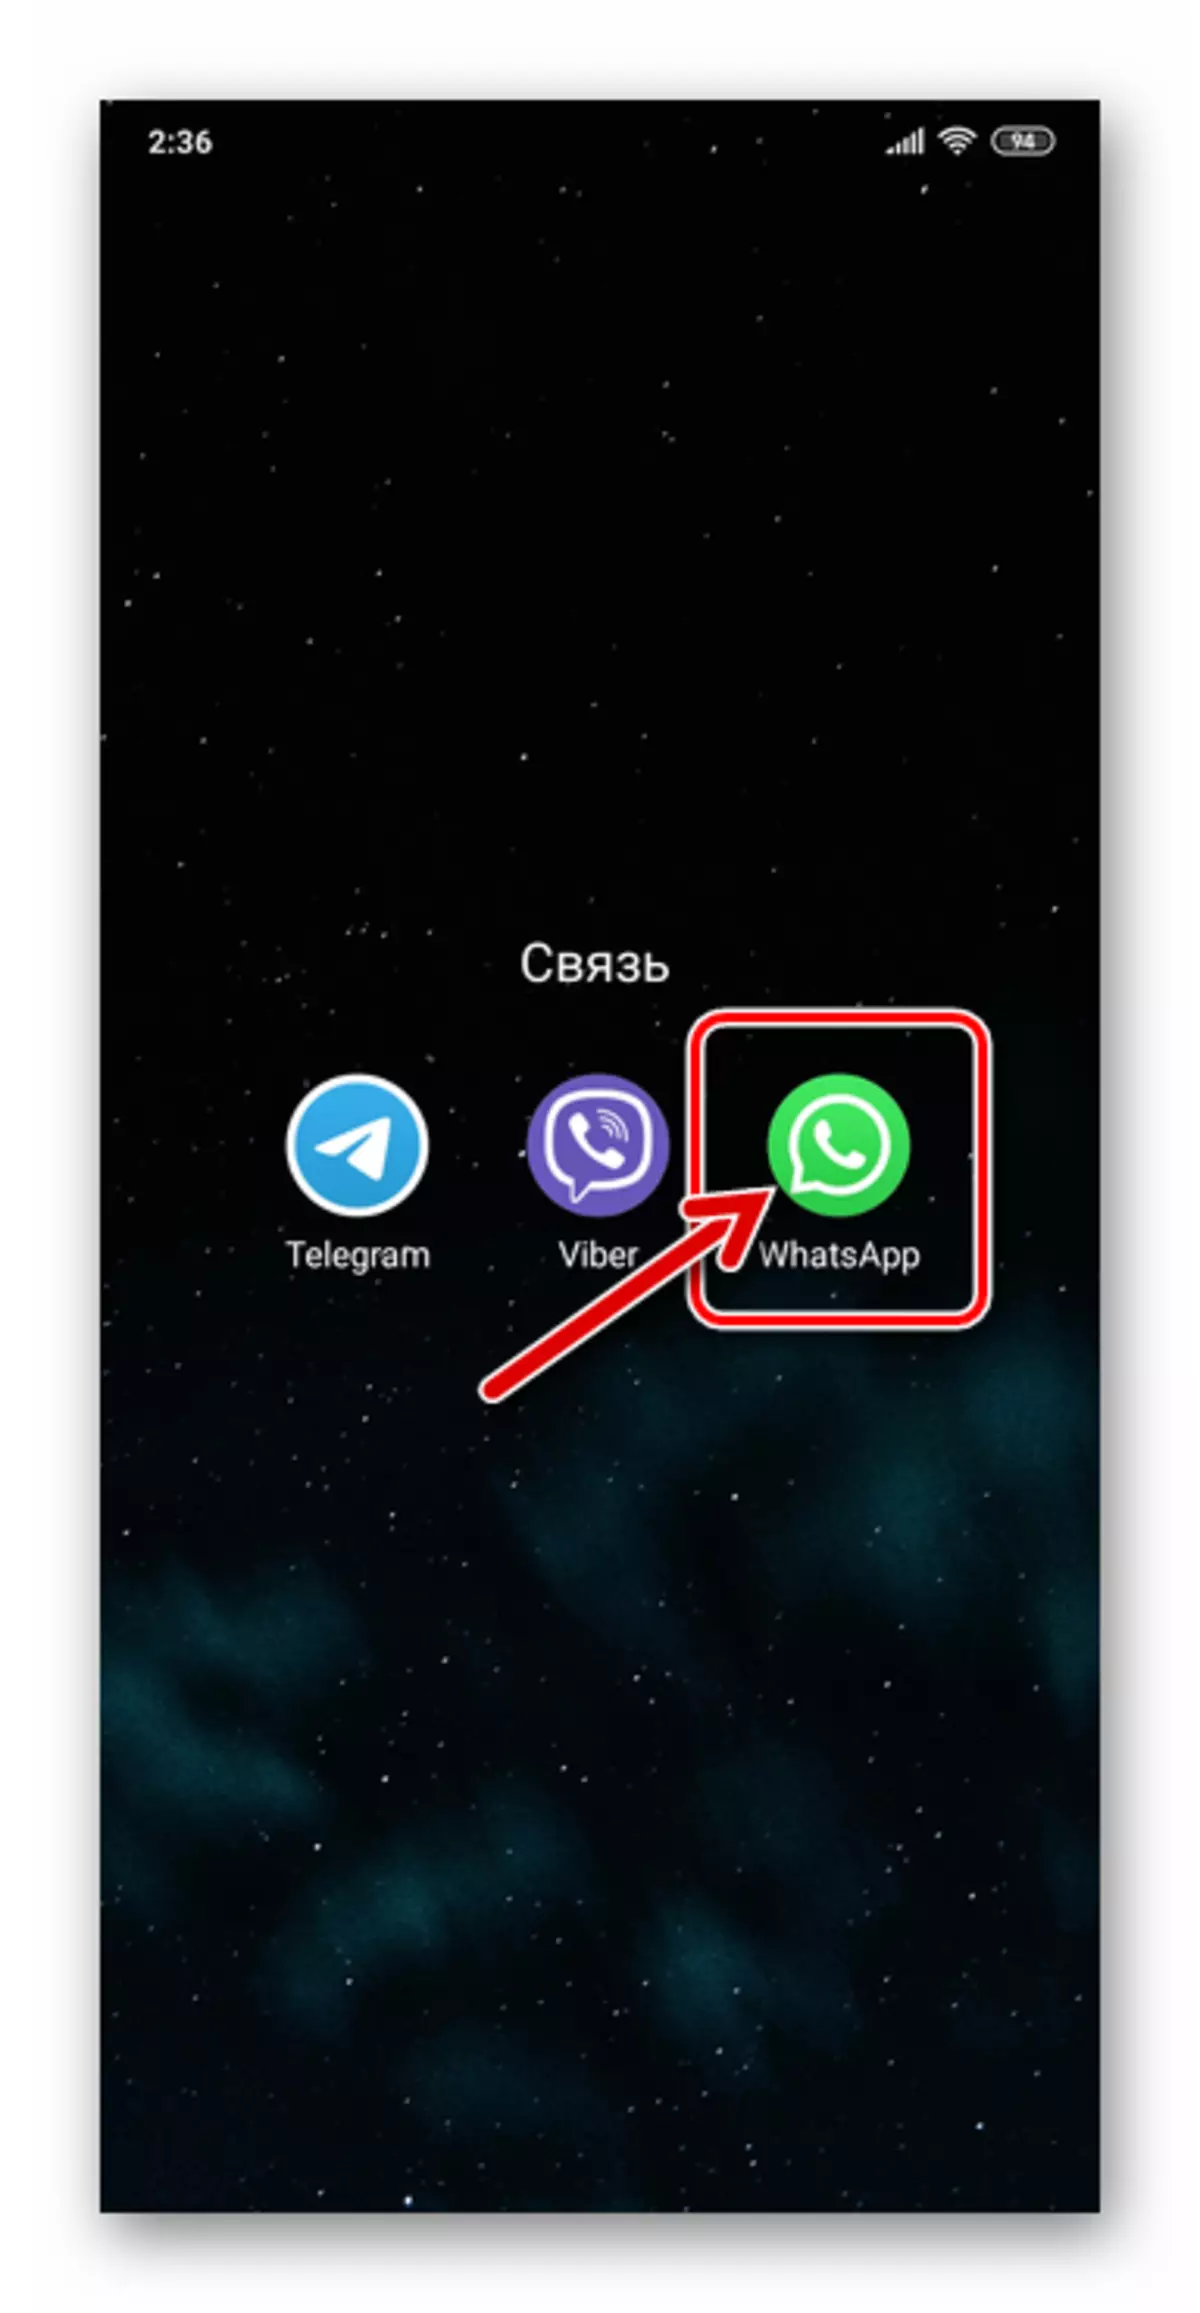 WhatsApp voor Android die de boodschapper runt om naar de chat te gaan met de gebruiker die door video wordt genoemd